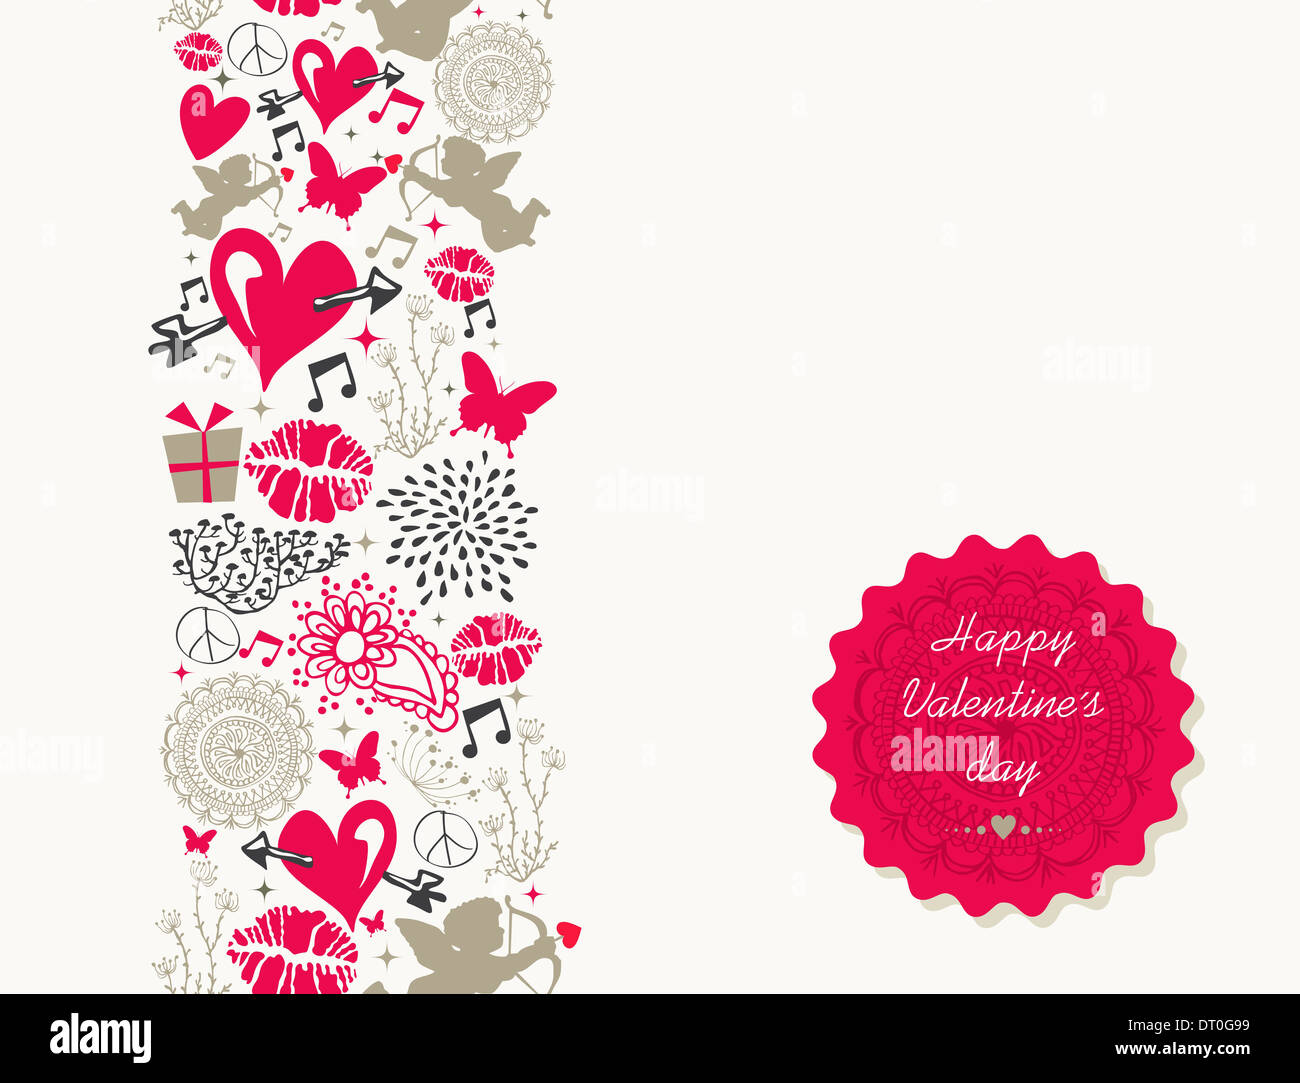 Happy Valentines Day greeting card illustrazione con amore le icone e simboli. EPS10 vettore. Foto Stock